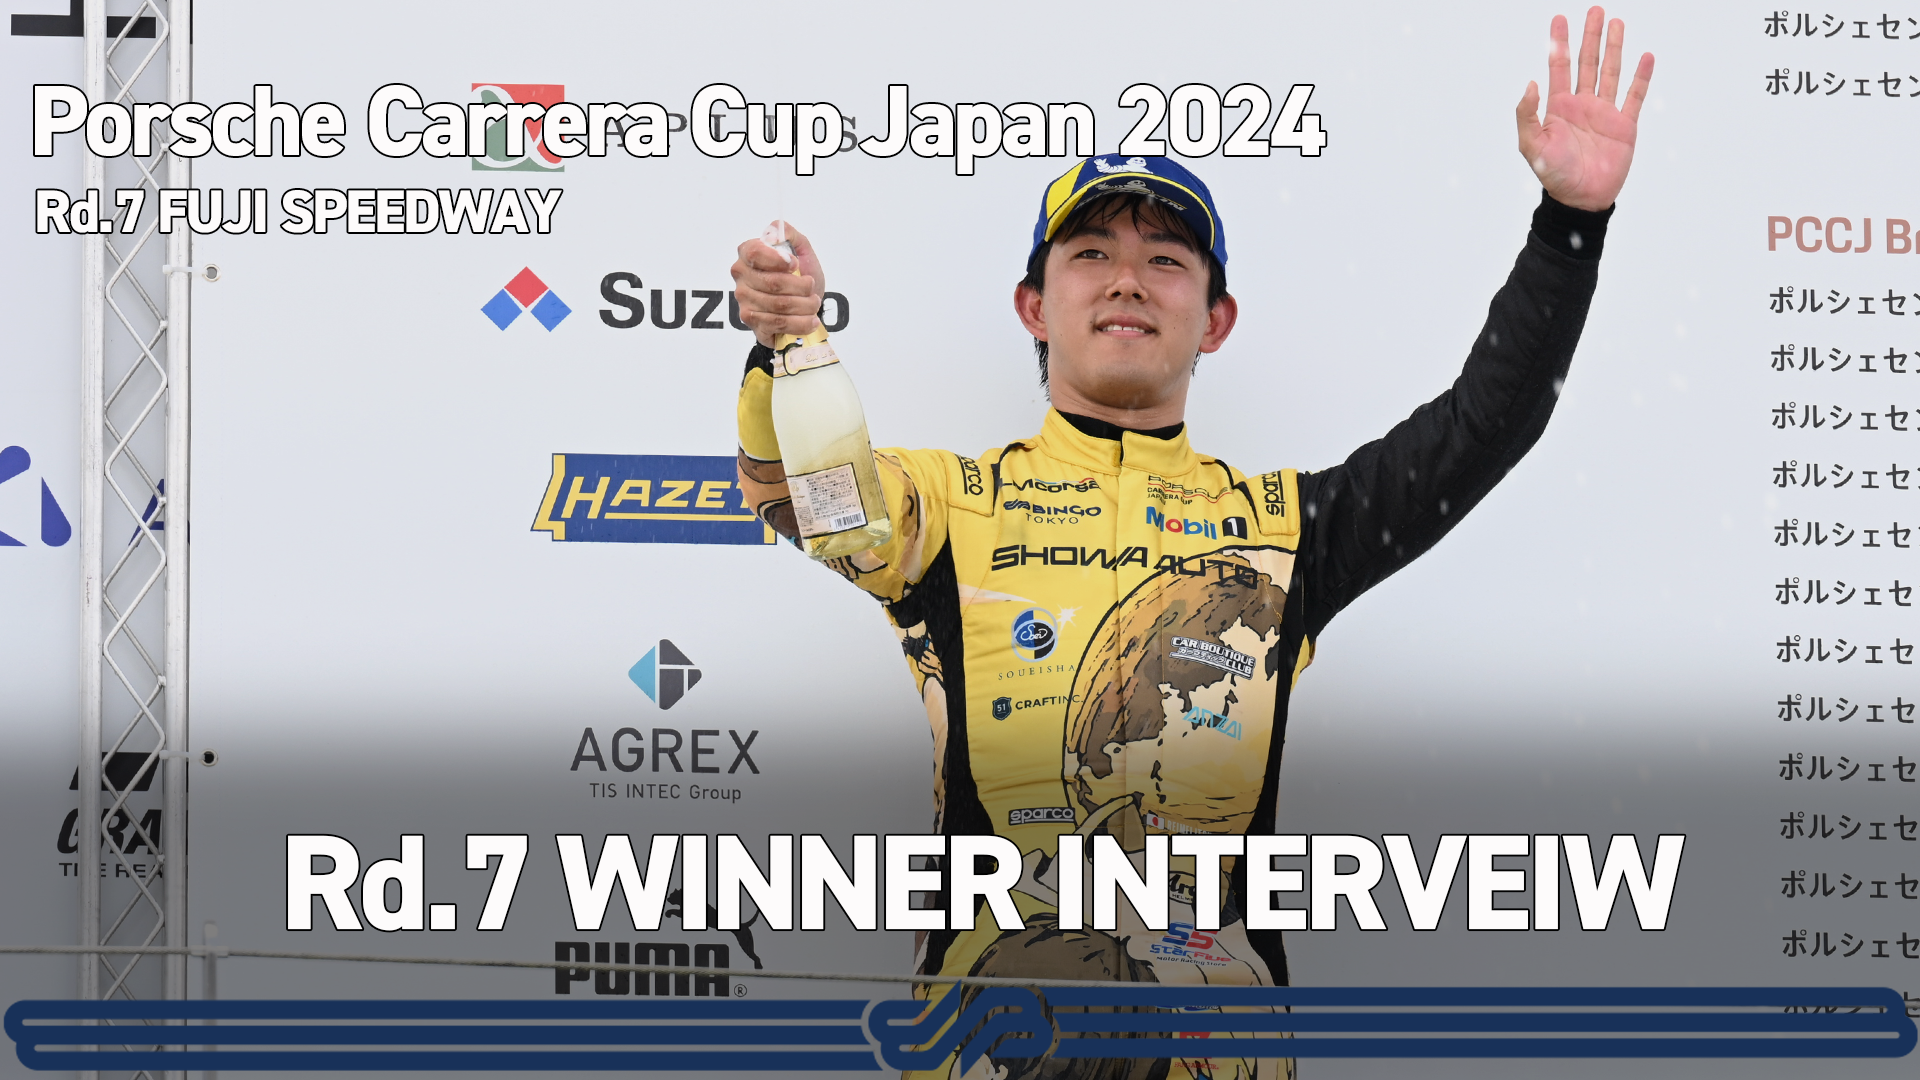 【Porsche Carrera Cup Japan 2024】Rd.7 WINNER INTERVIEW